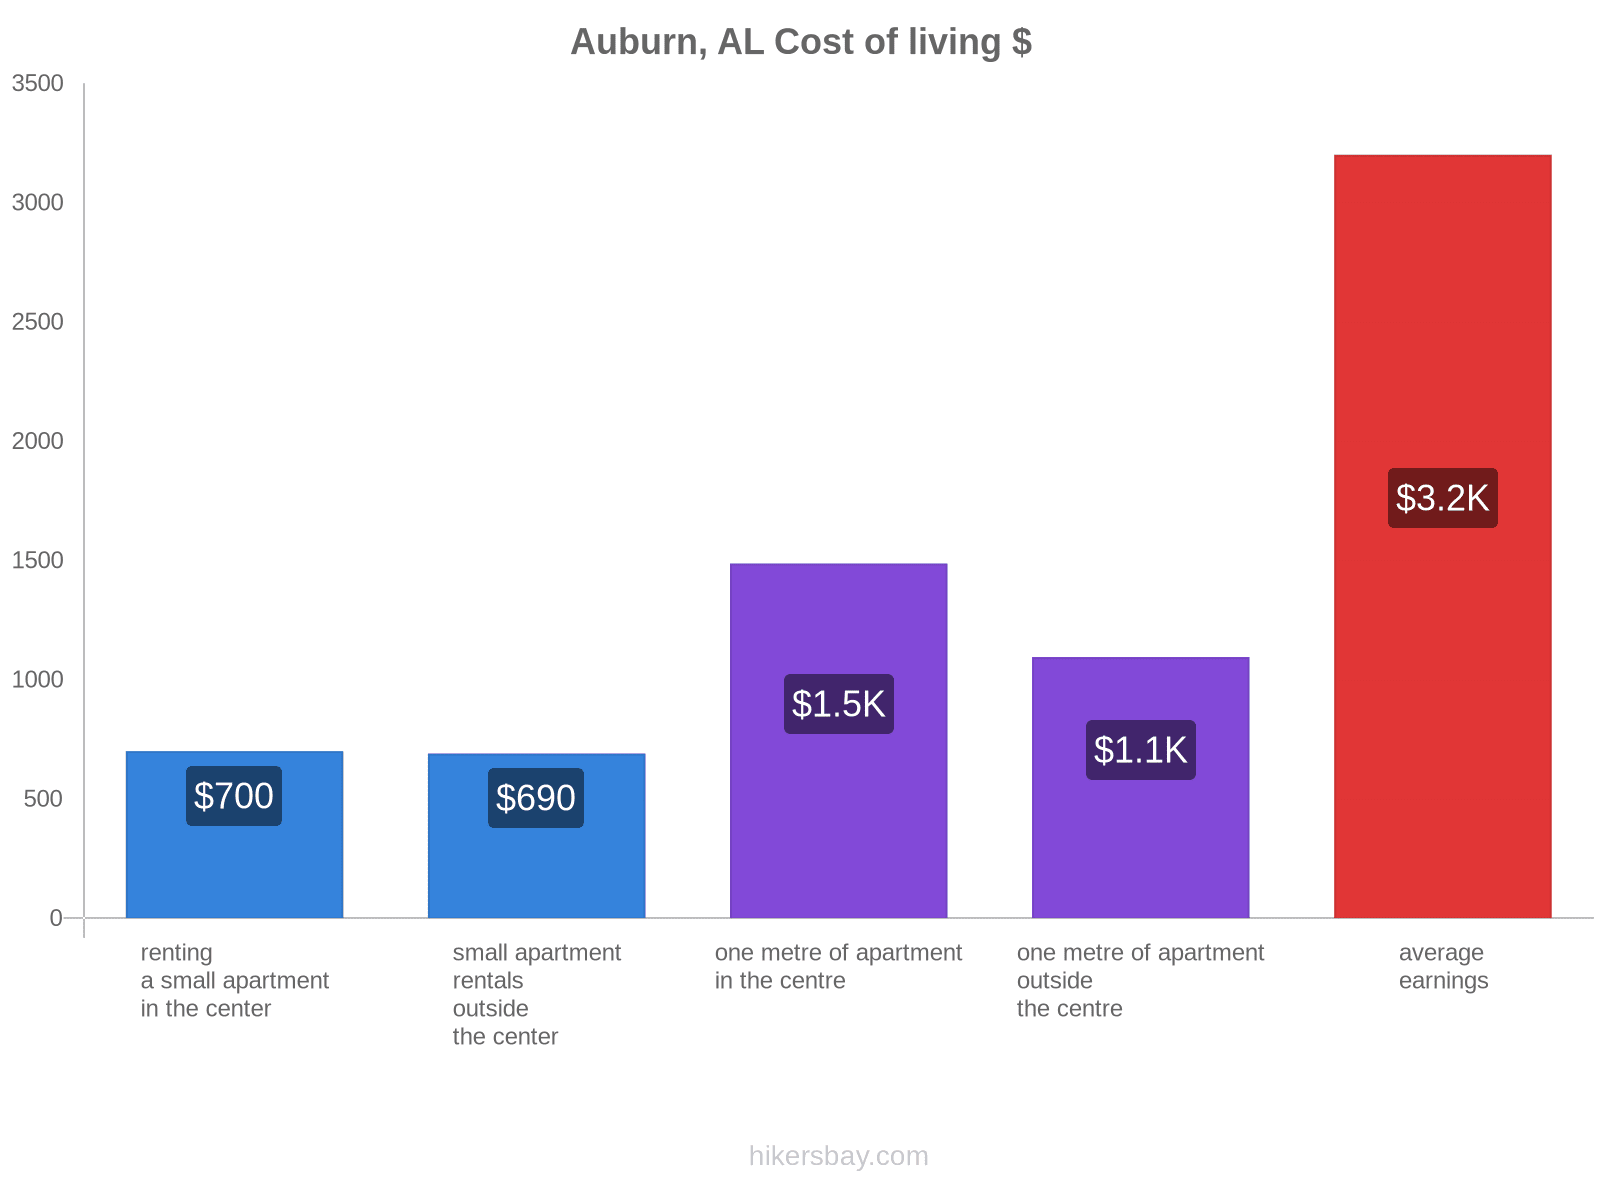 Auburn, AL cost of living hikersbay.com